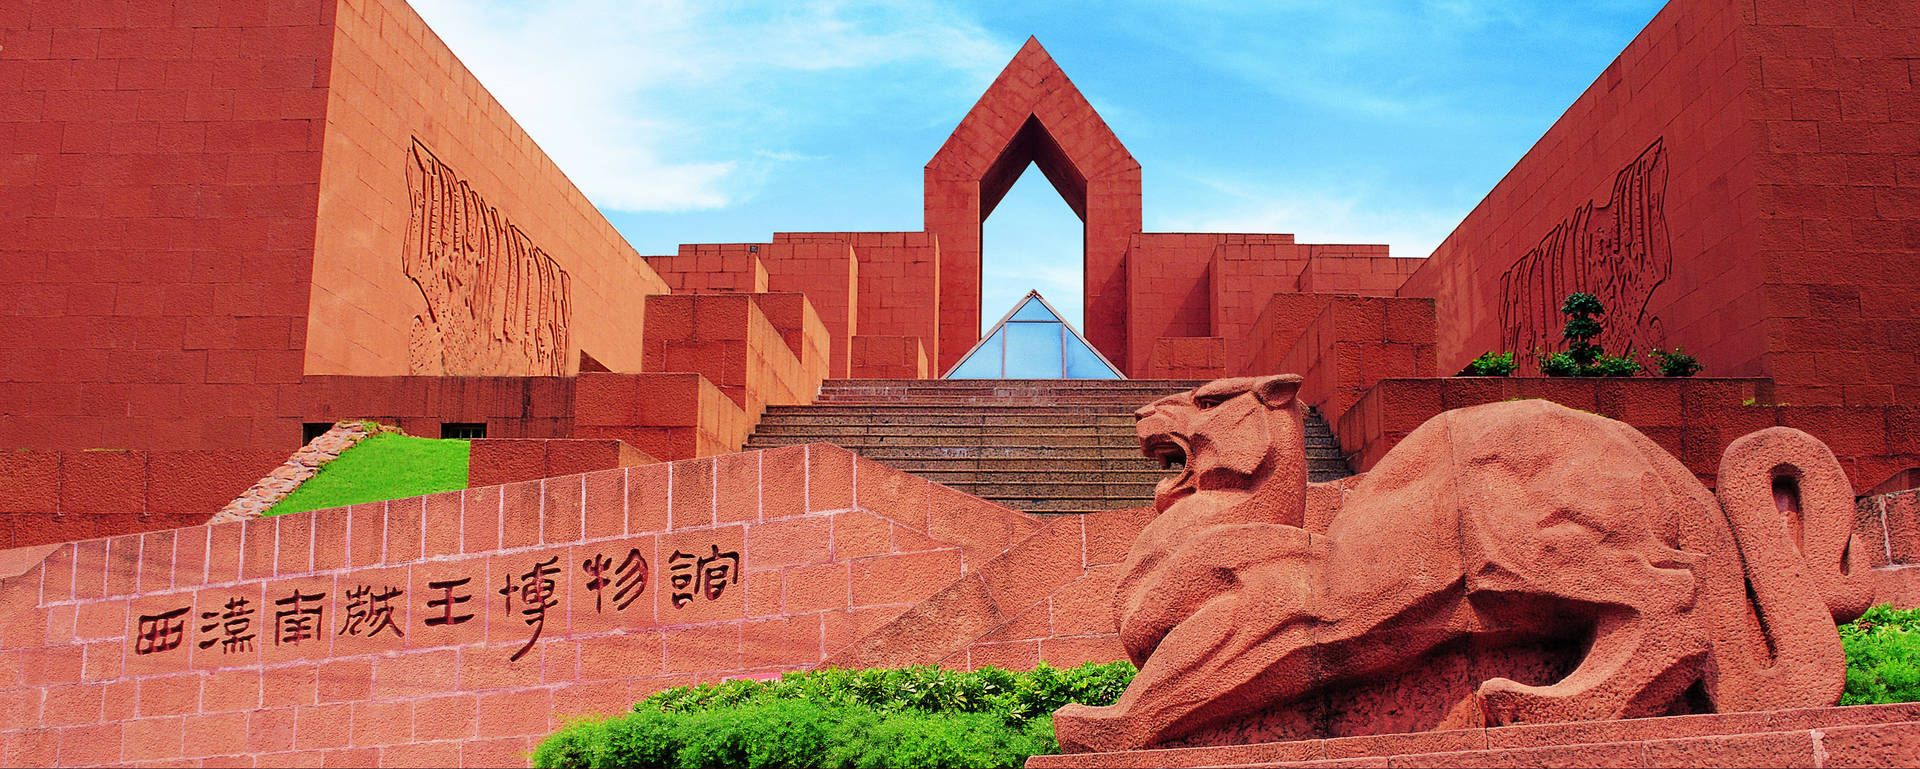 Guangzhou Western Han Mausoleum